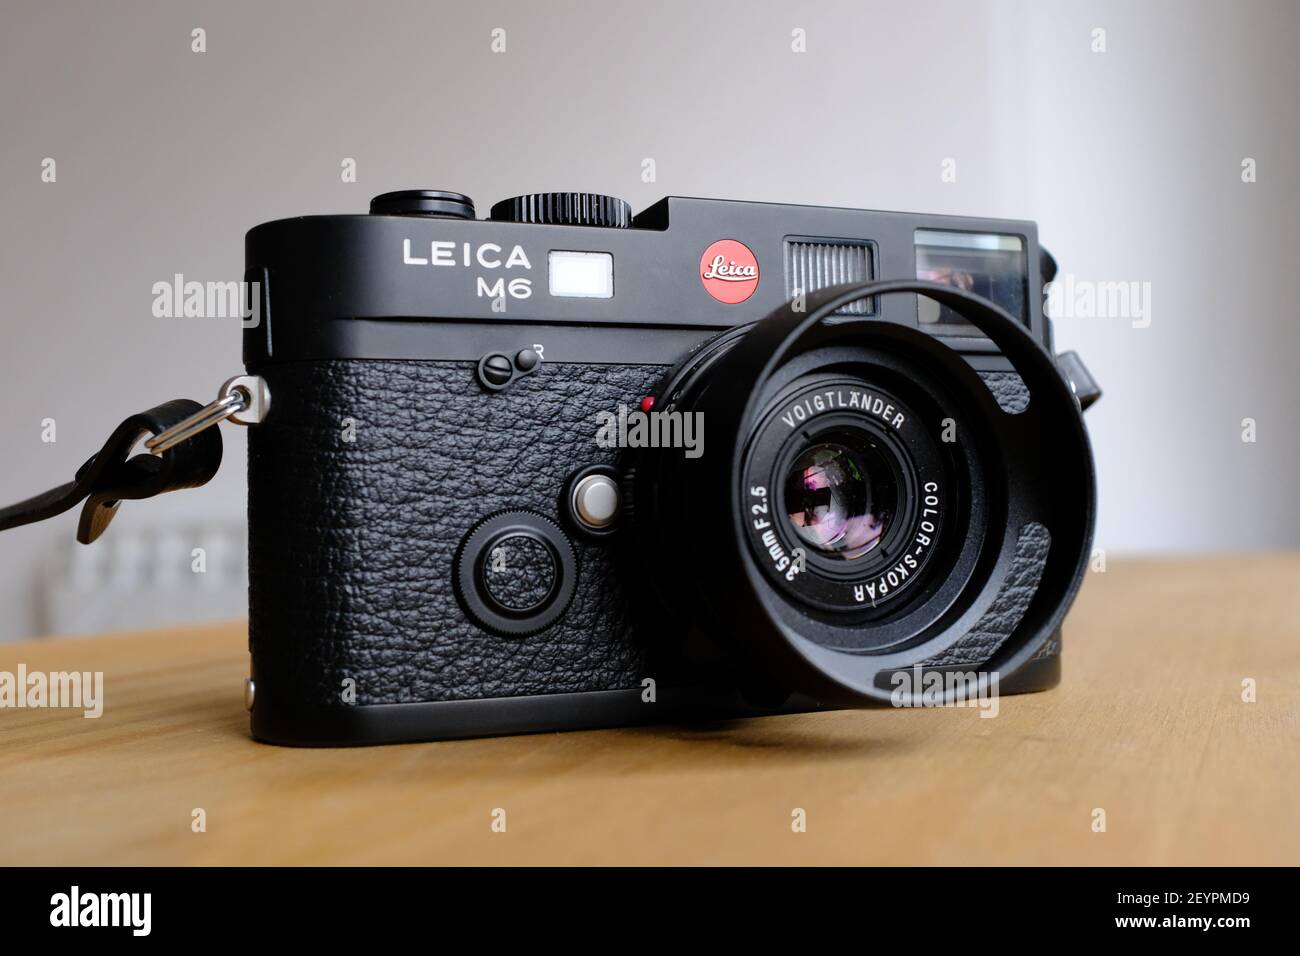 LONDON - 6th. MÄRZ 2021: Eine analoge Leica M6 TTL-Filmkamera mit Voigtlander 35mm Objektiv auf einer Holzplatte. Stockfoto